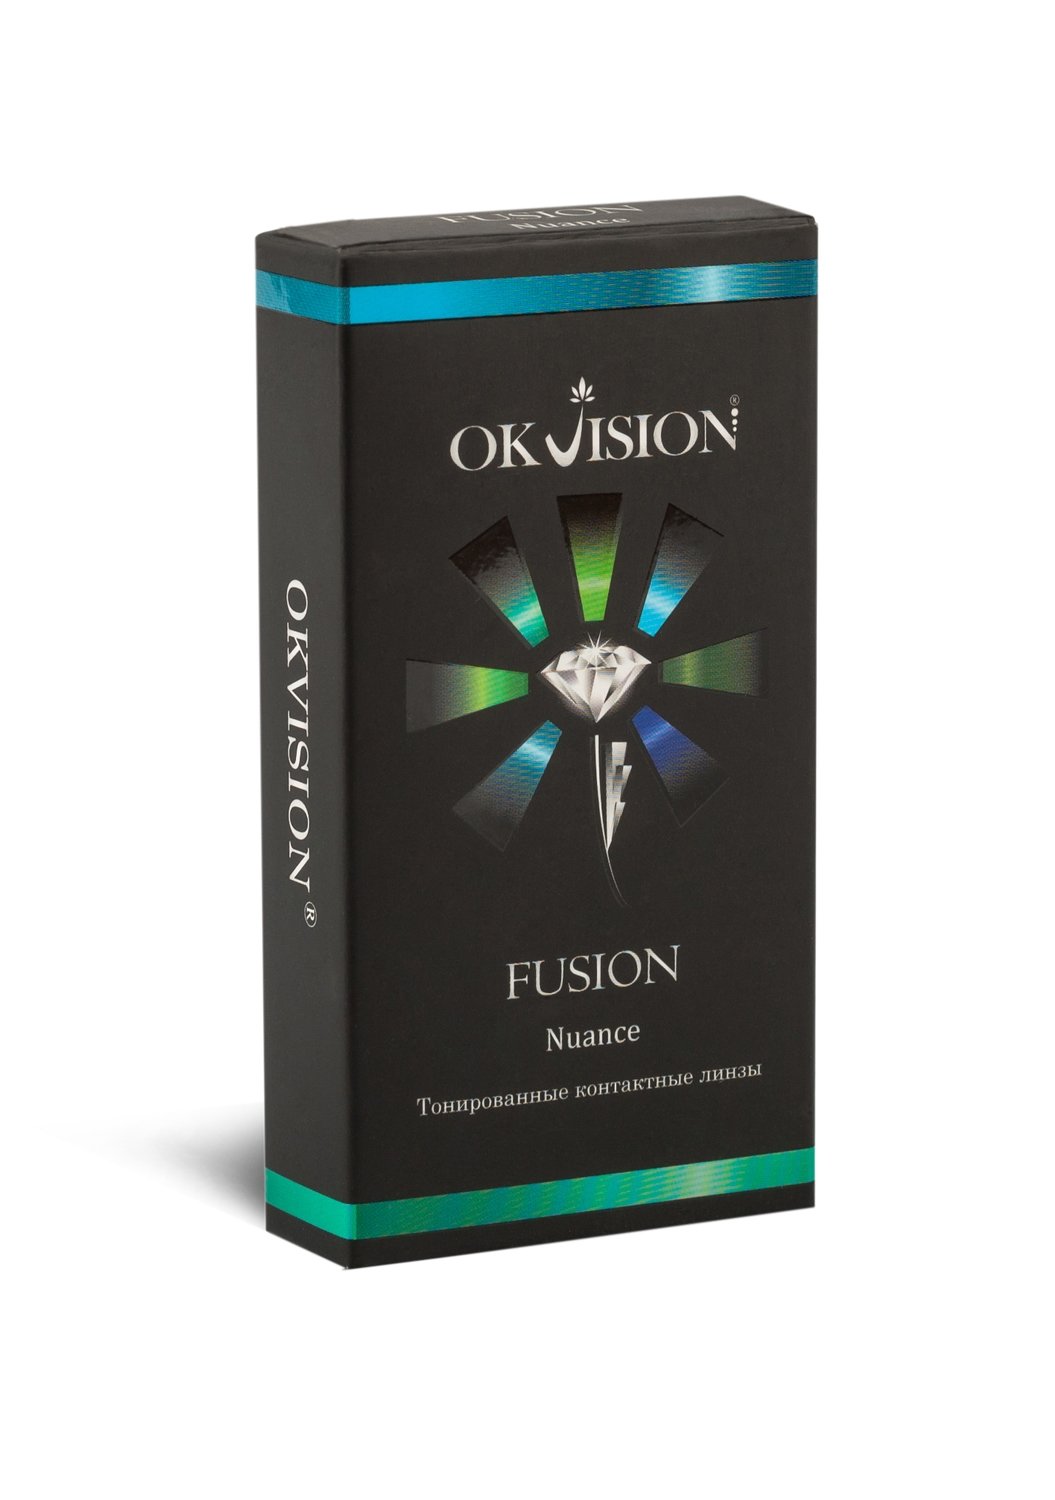 OKVision FUSION Nuance